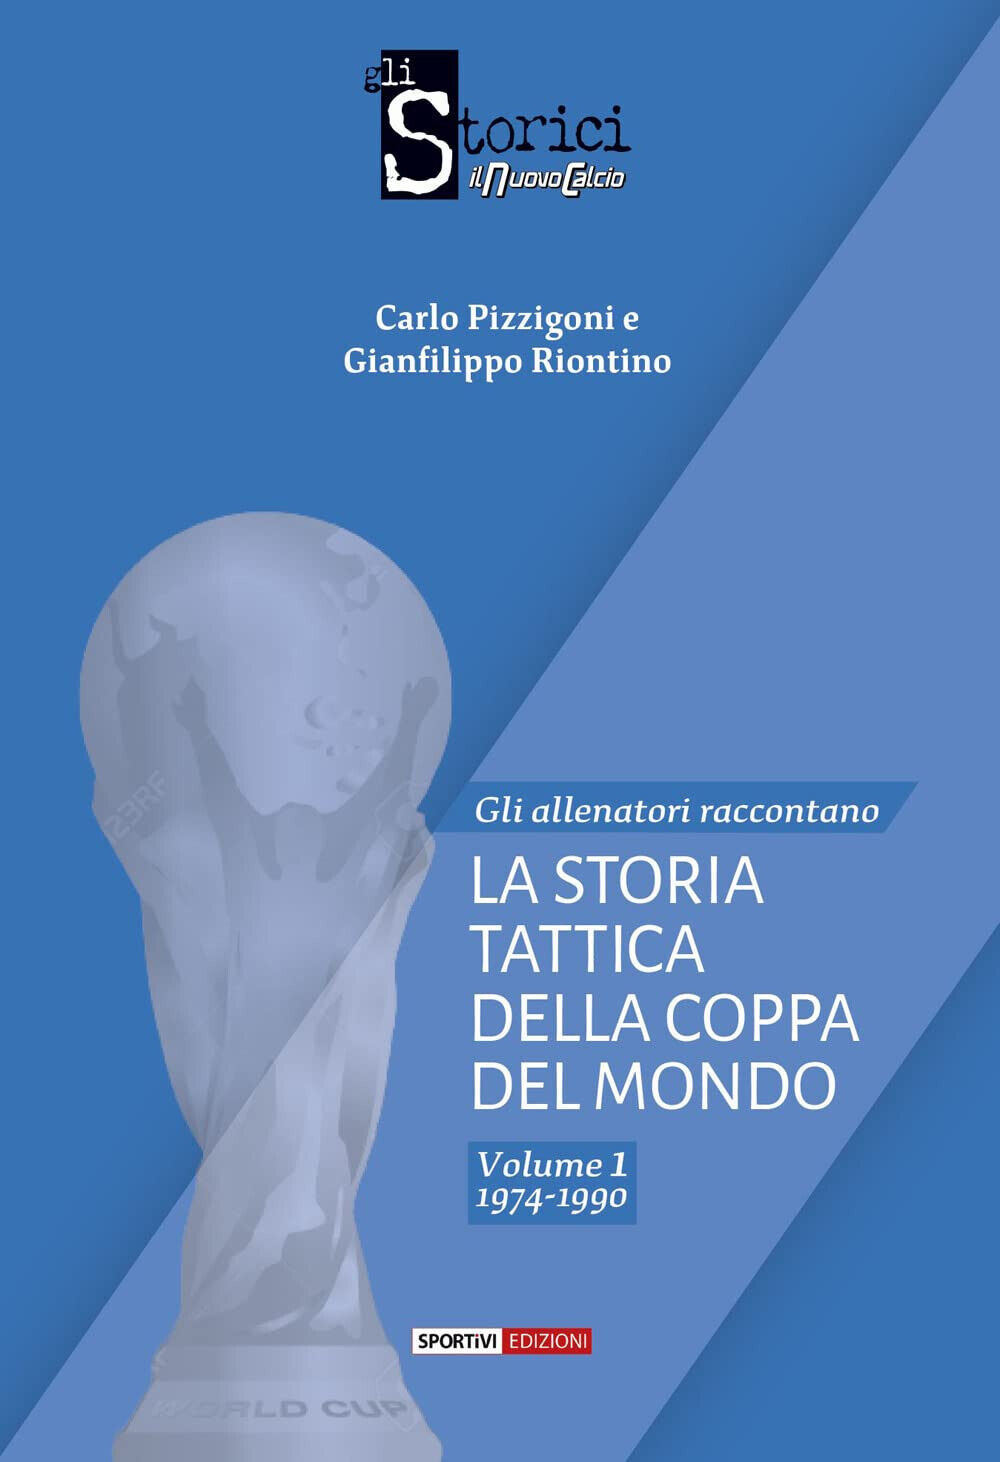 La storia tattica della Coppa del Mondo vol.1 - Carlo Pizzigoni - Sportivi, 2022